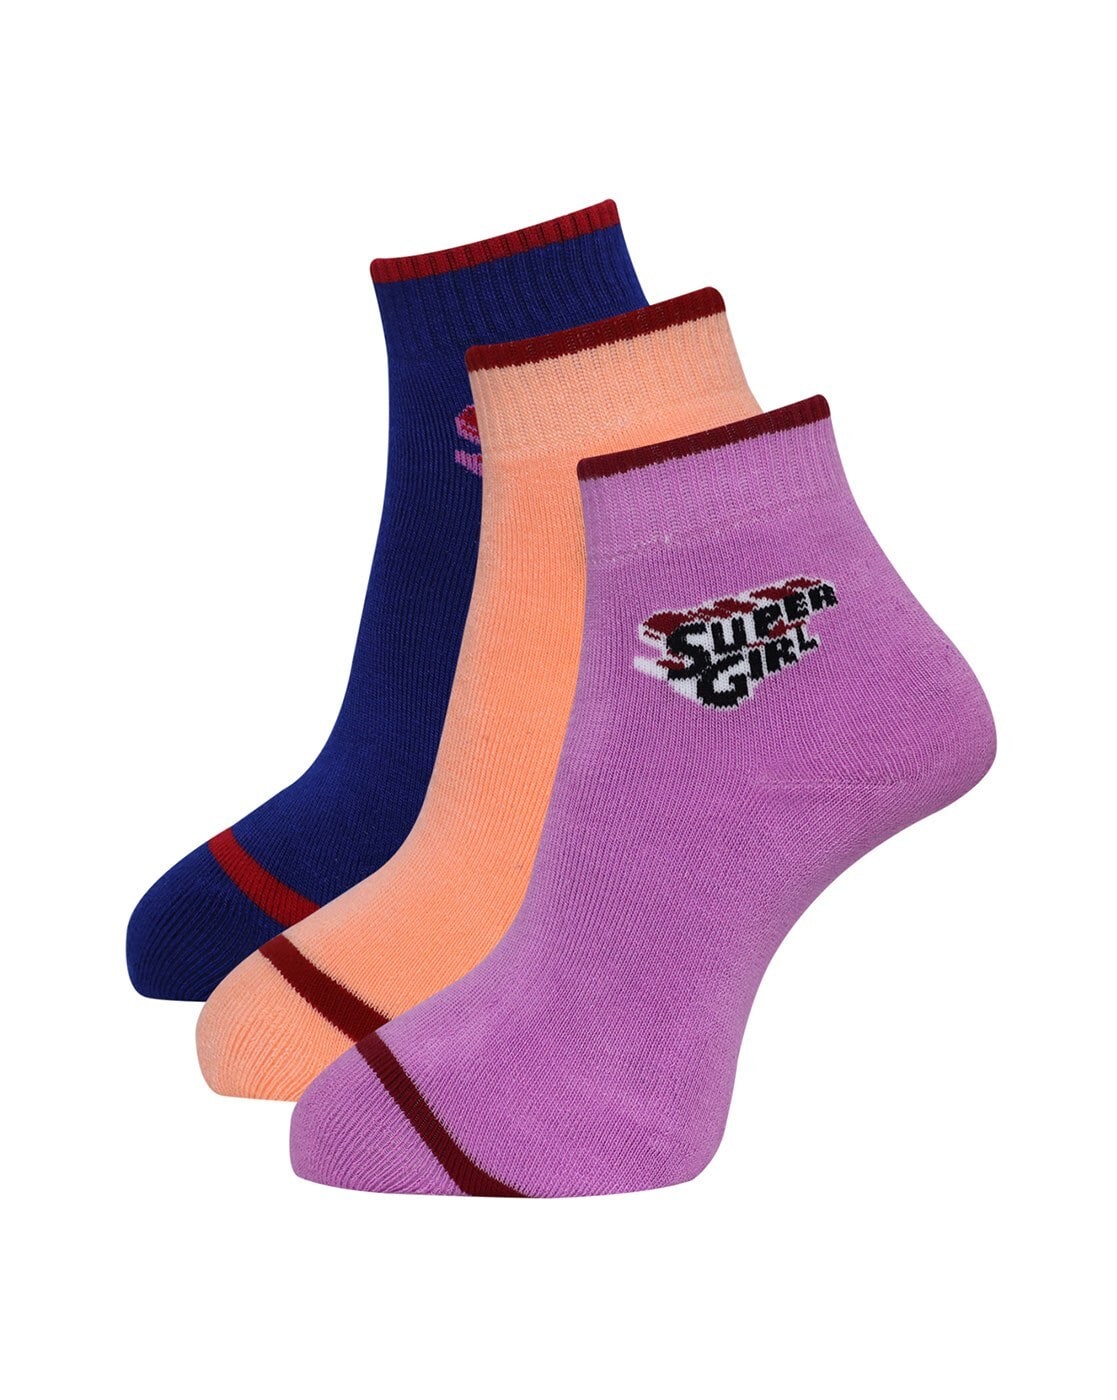 Buy Multicoloured Socks & Stockings for Women by DOLLAR SOCKS